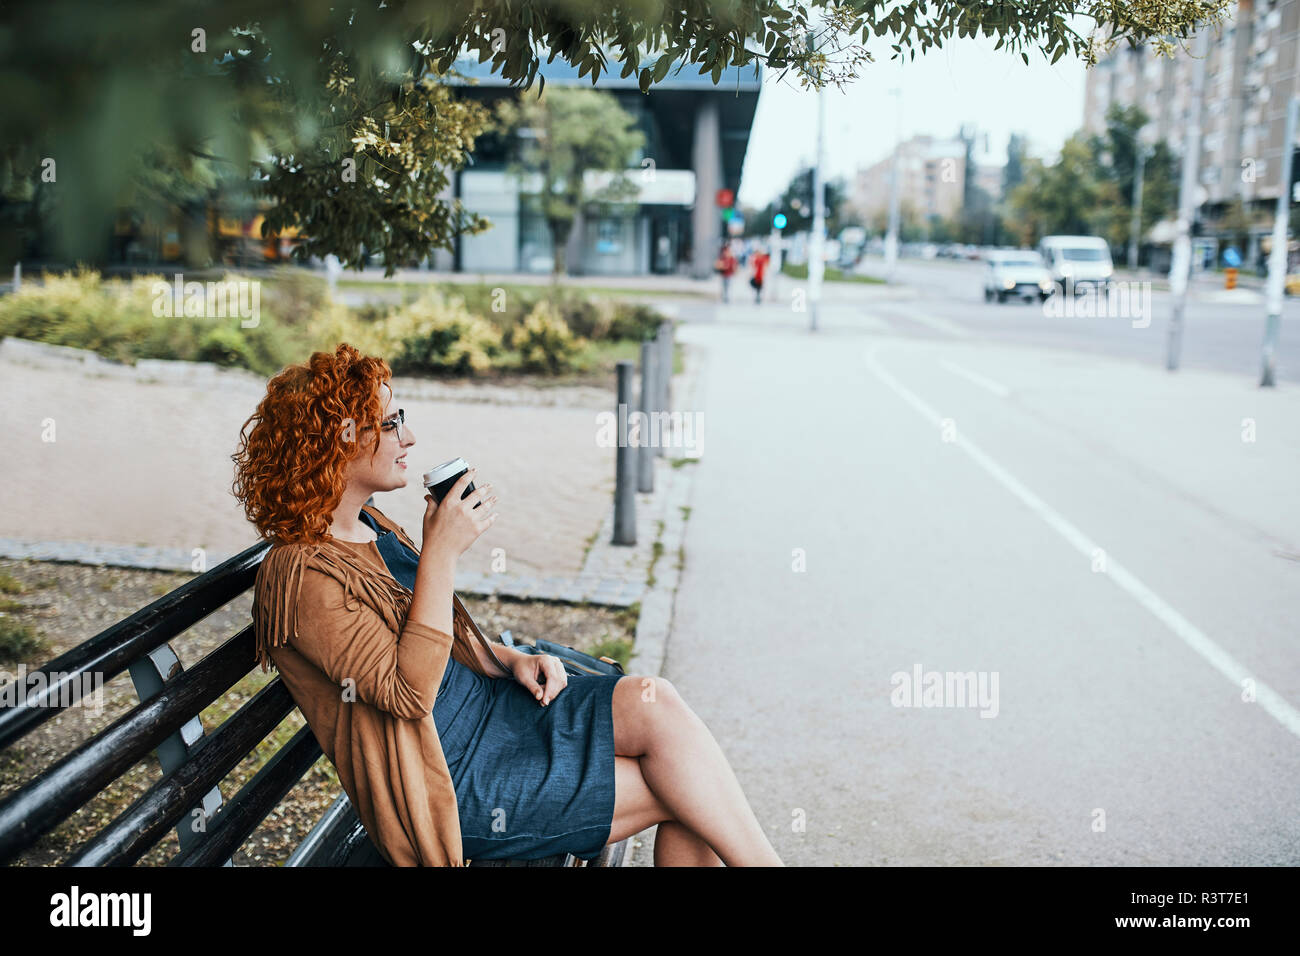 Junge Frau auf einer Bank sitzen, Kaffee trinken Stockfoto